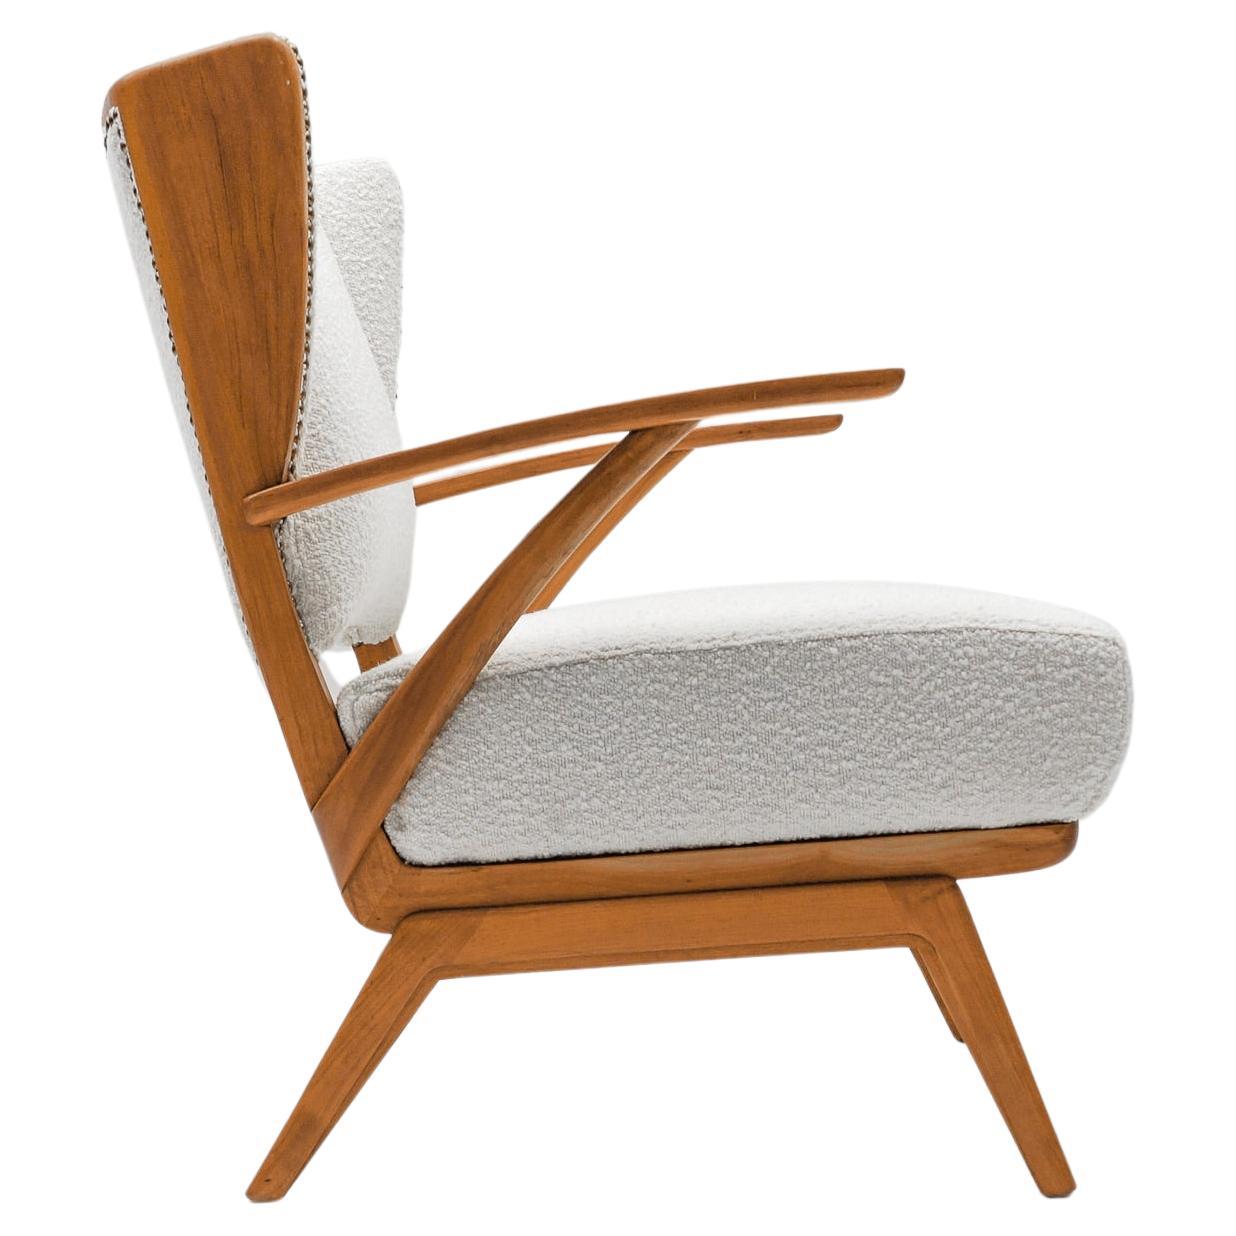 Weißer Sessel aus Boucle-Stoff und Holz mit Ohrensessel, Italien, 1950er Jahre